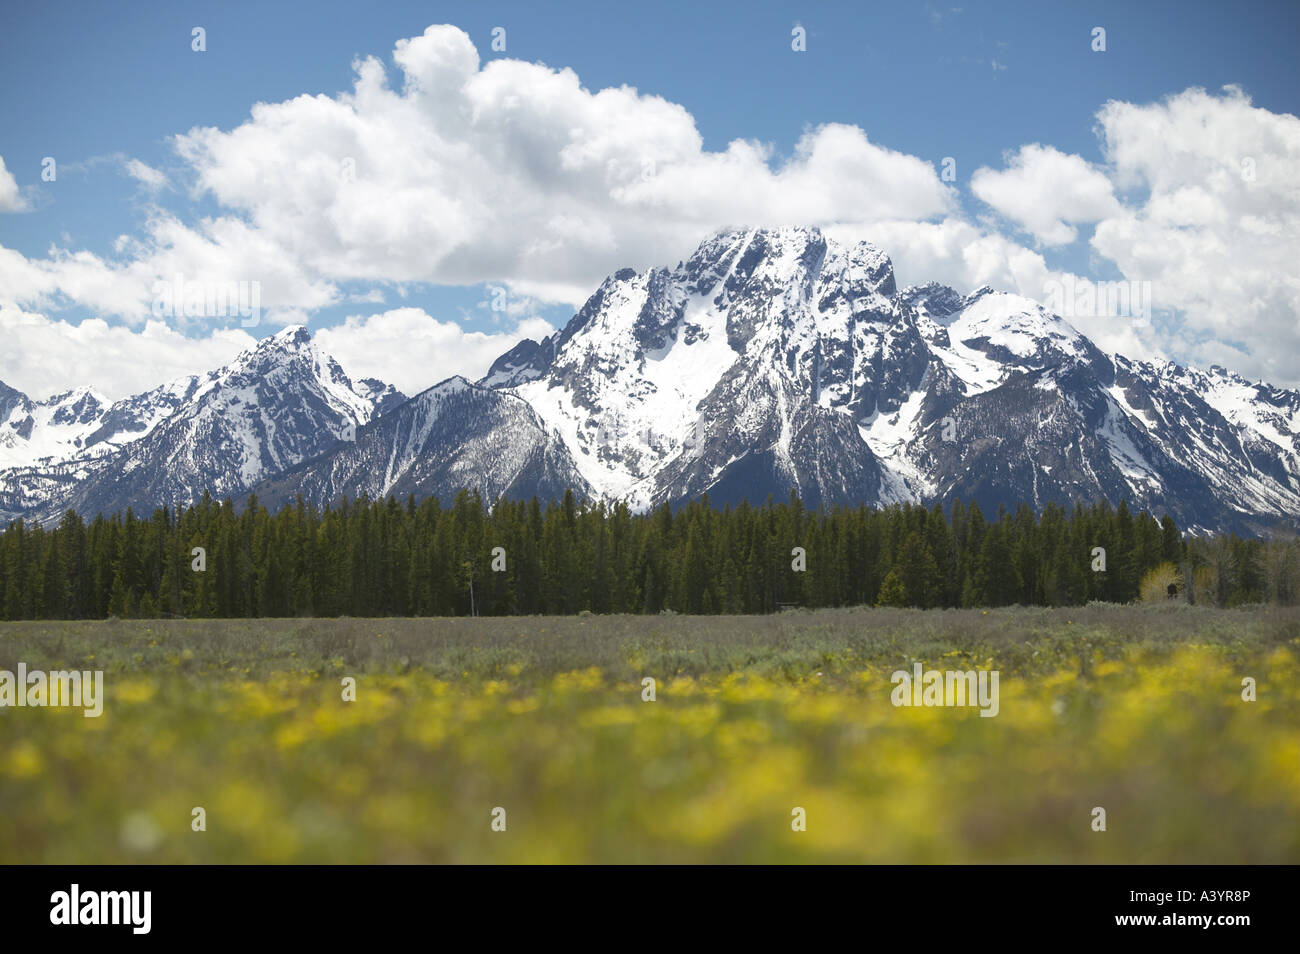 Snow capped Mount Moran in primavera con motivi floreali in primo piano, STATI UNITI D'AMERICA, Grand Teton National Park Foto Stock